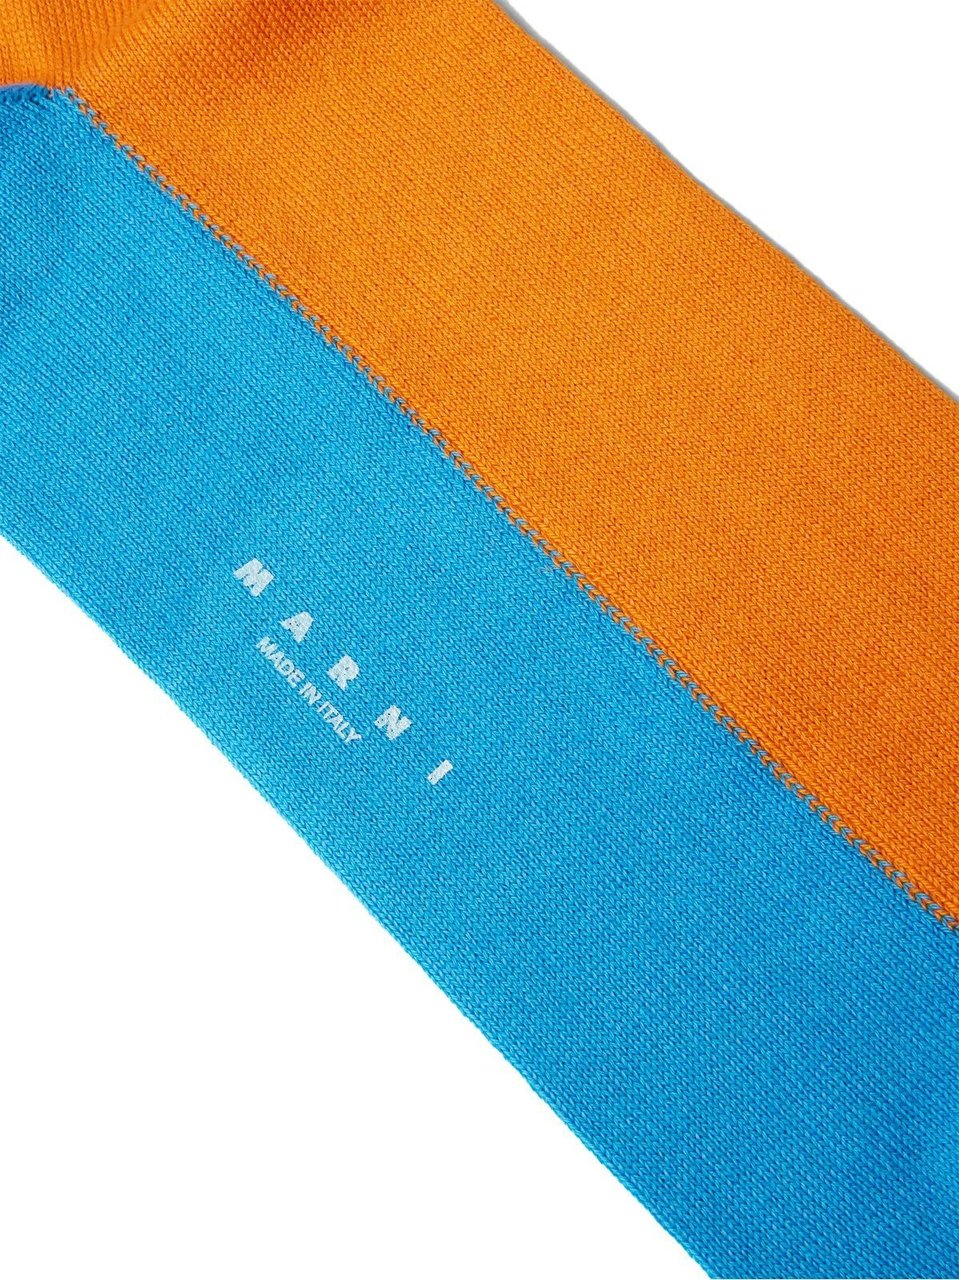 Marni Logo Intarsia Socks Oranje